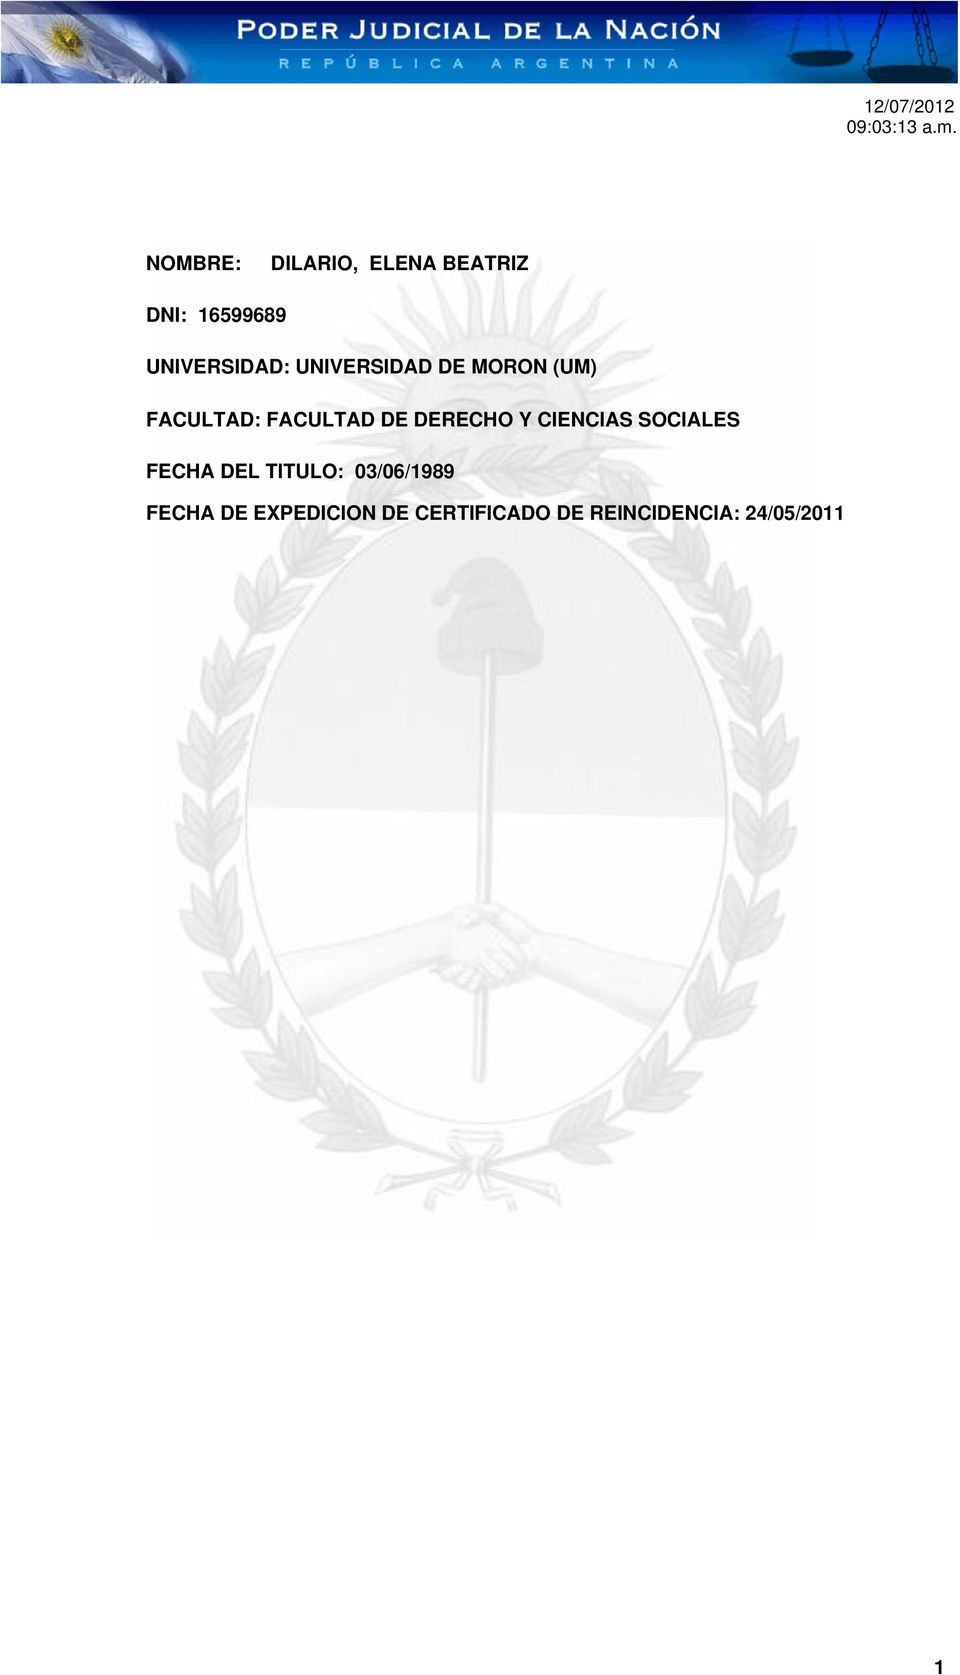 CIENCIAS SOCIALES FECHA DEL TITULO: 03/06/1989